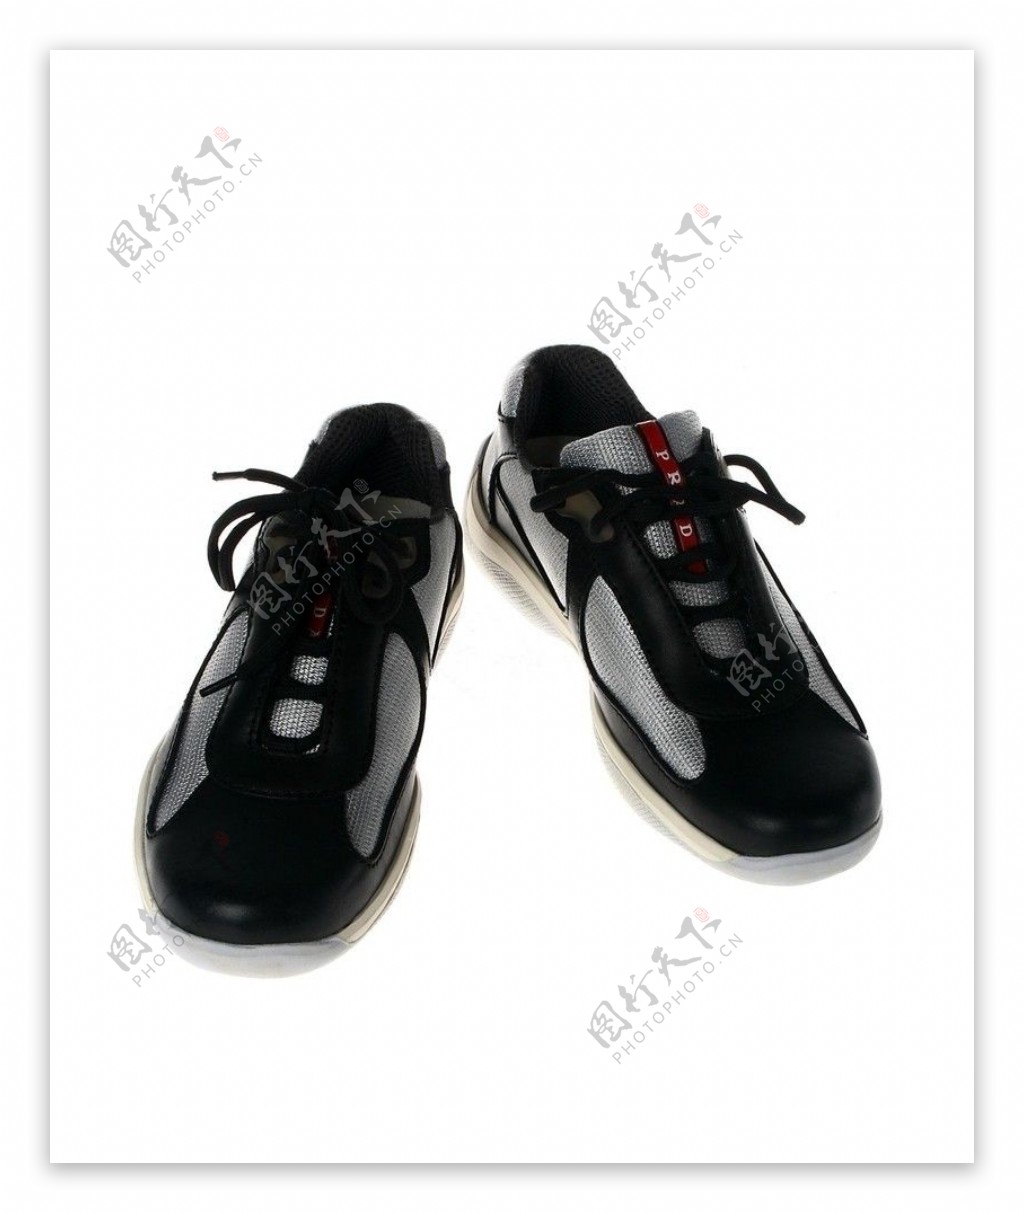 普拉达男式运动鞋图片